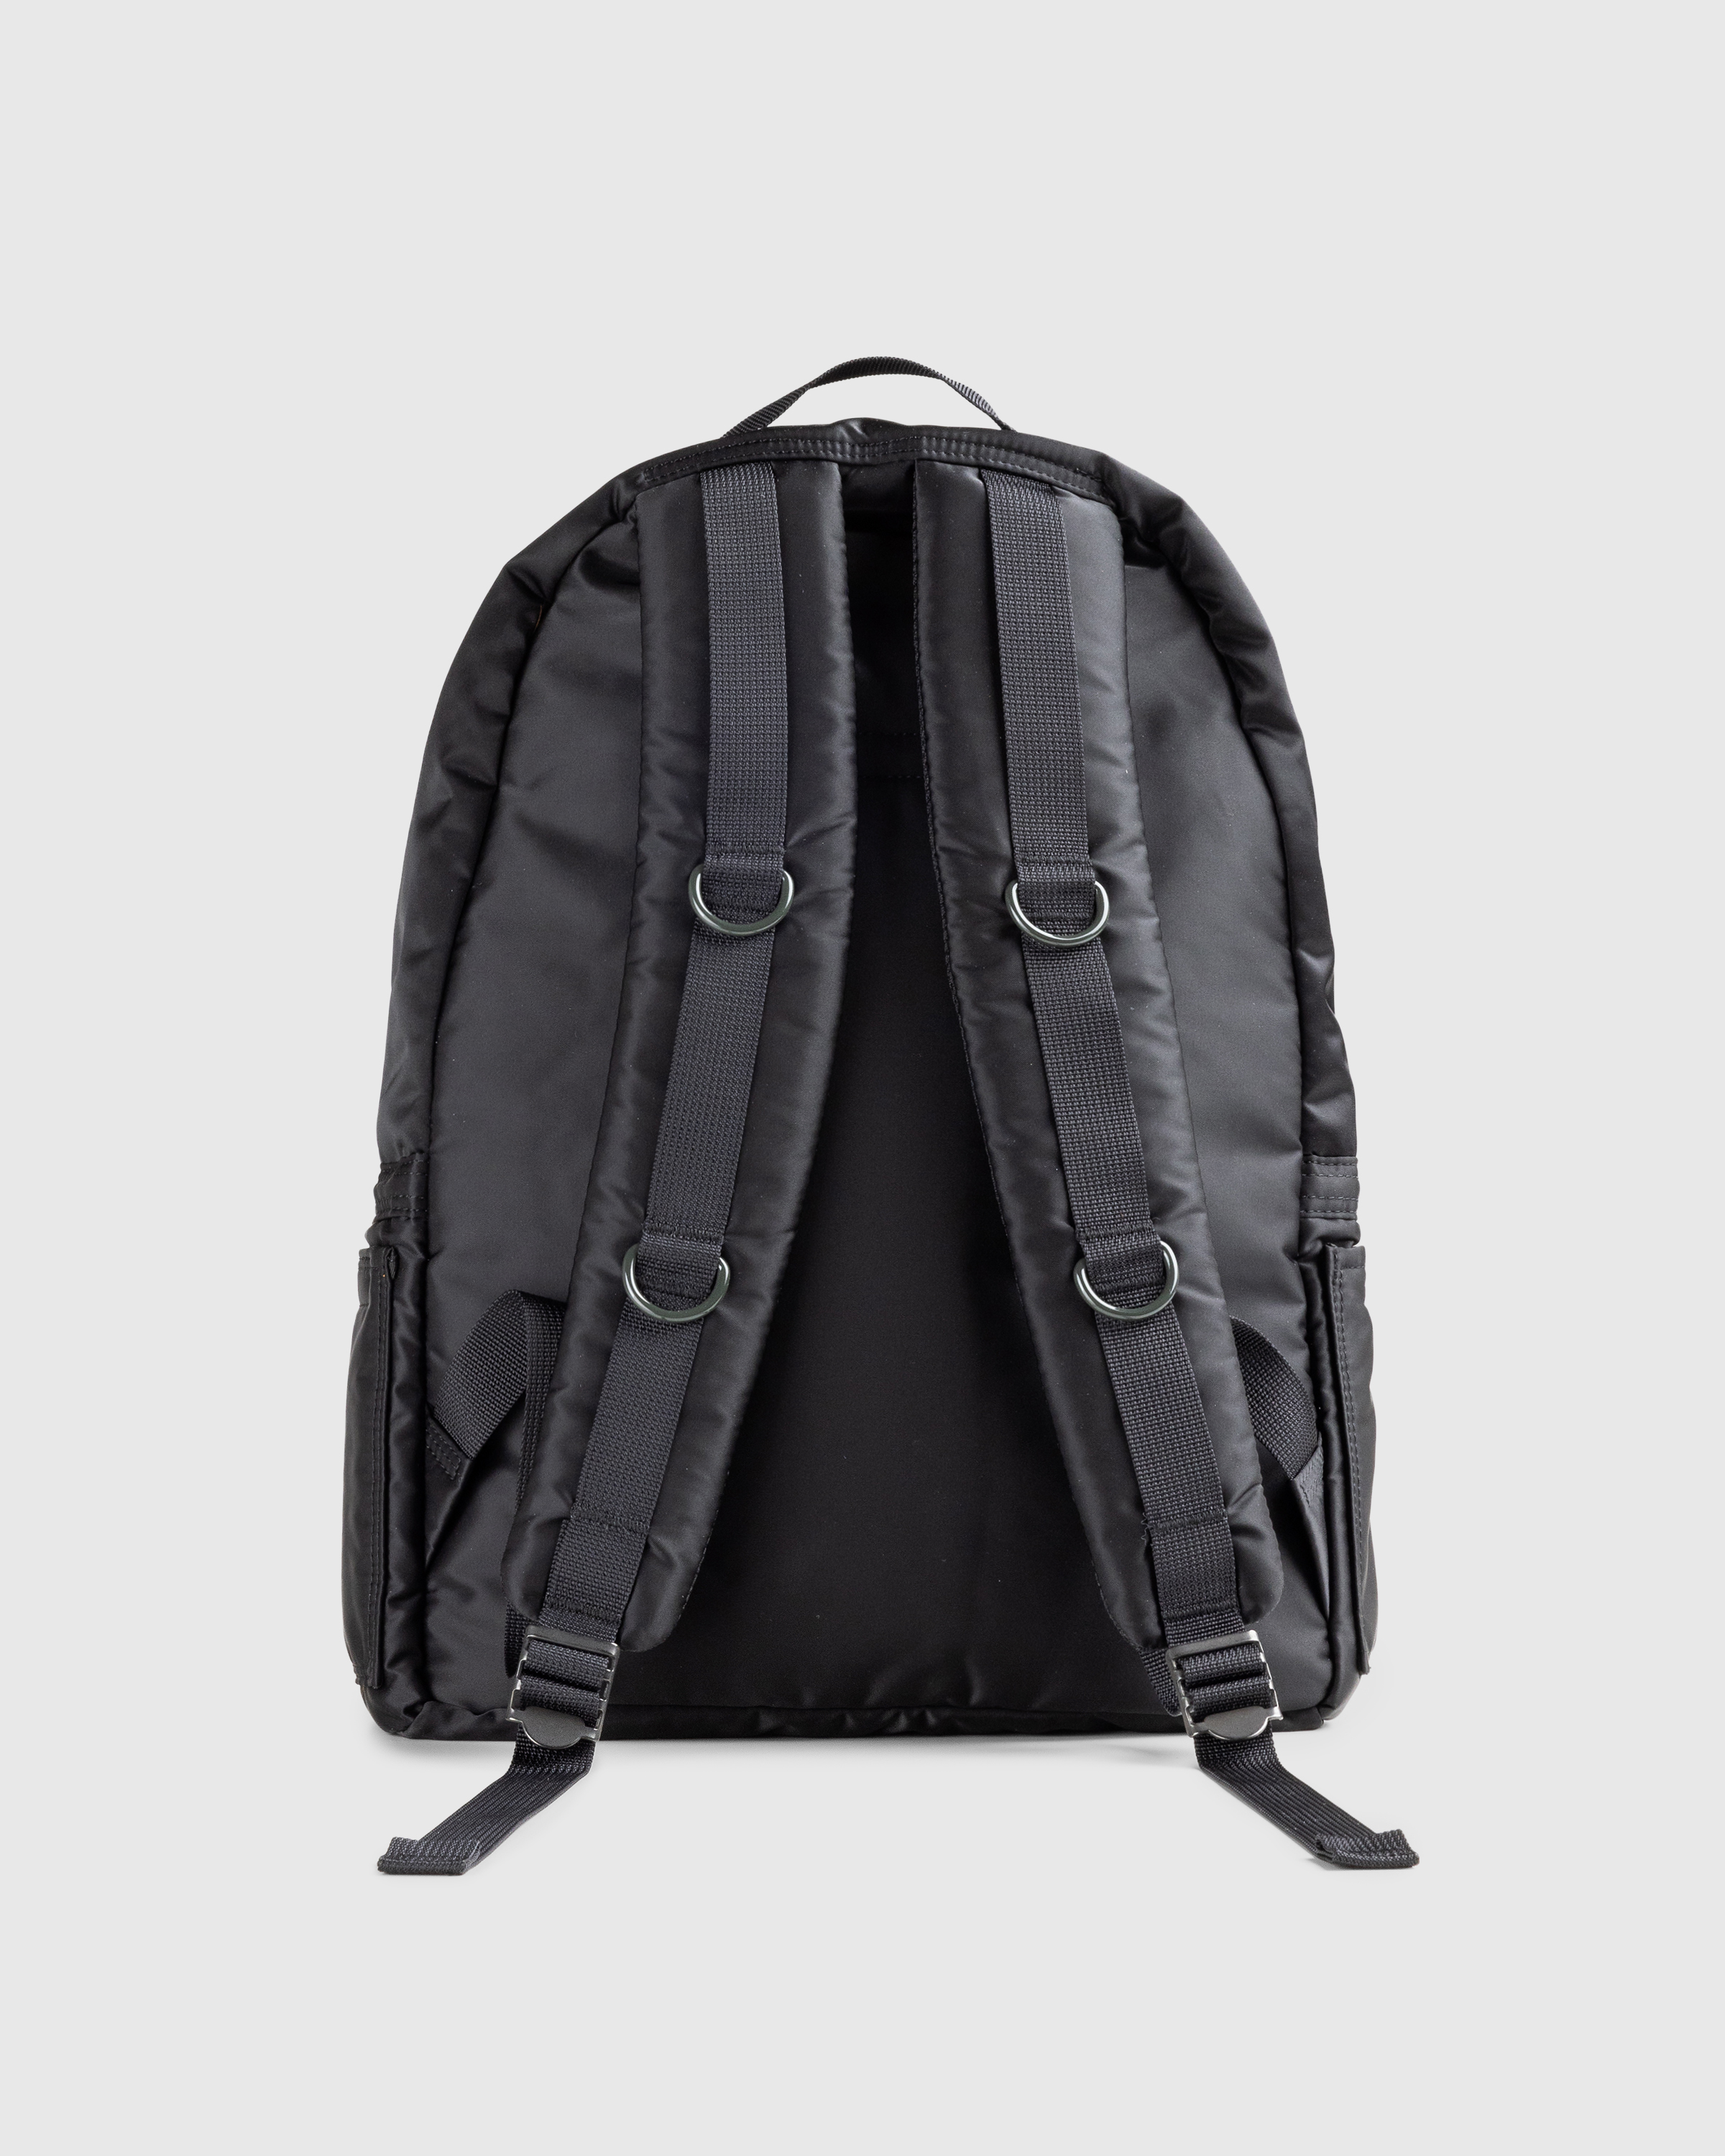 Porter-Yoshida & Co. – Tanker Daypack Black - Shoulder Bags - Black - Image 2